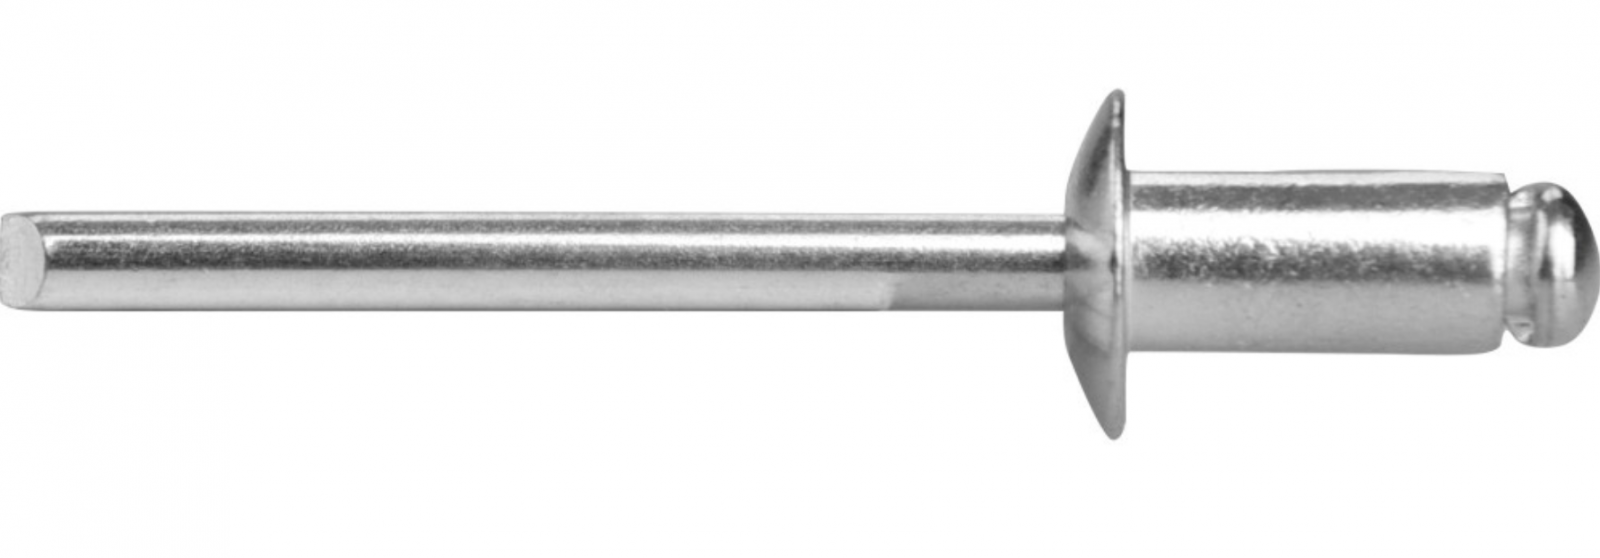 LINDAB - POP - Jednostranný lakovaný nýt s ocelovým trnem - SMET 045 (RAL 9006)